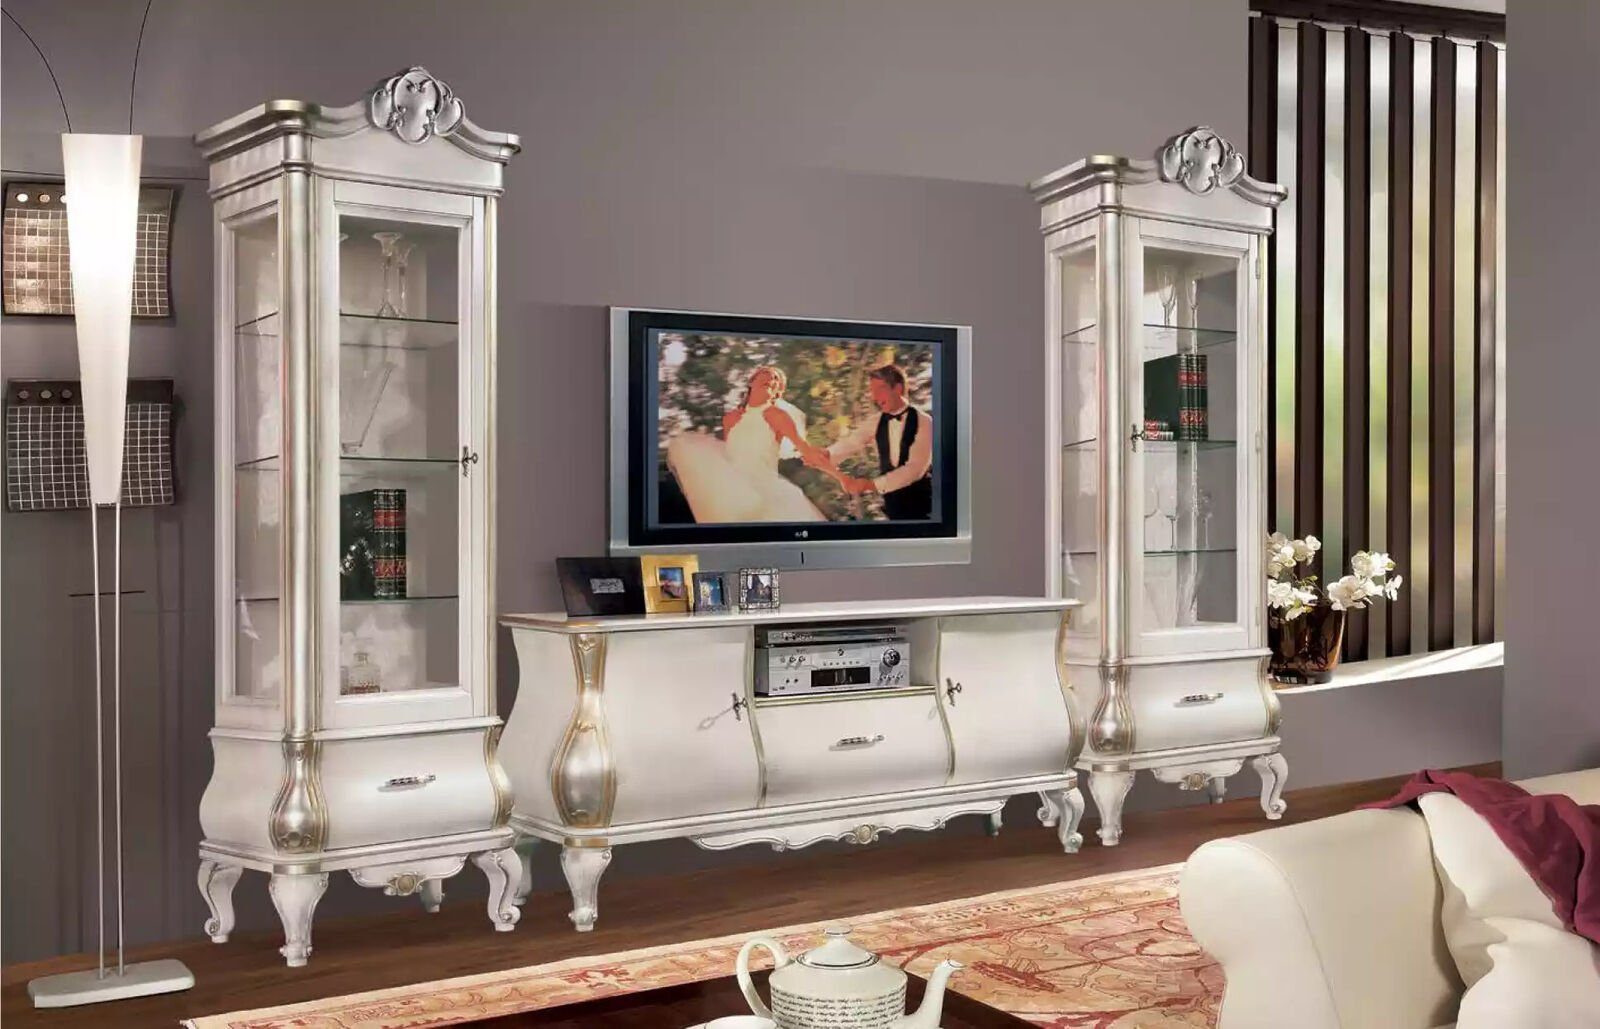 TV-Ständer in im weißes neu Made Wohnzimmer, JVmoebel TV-Wand Holz Europa Luxuriöses klassisches